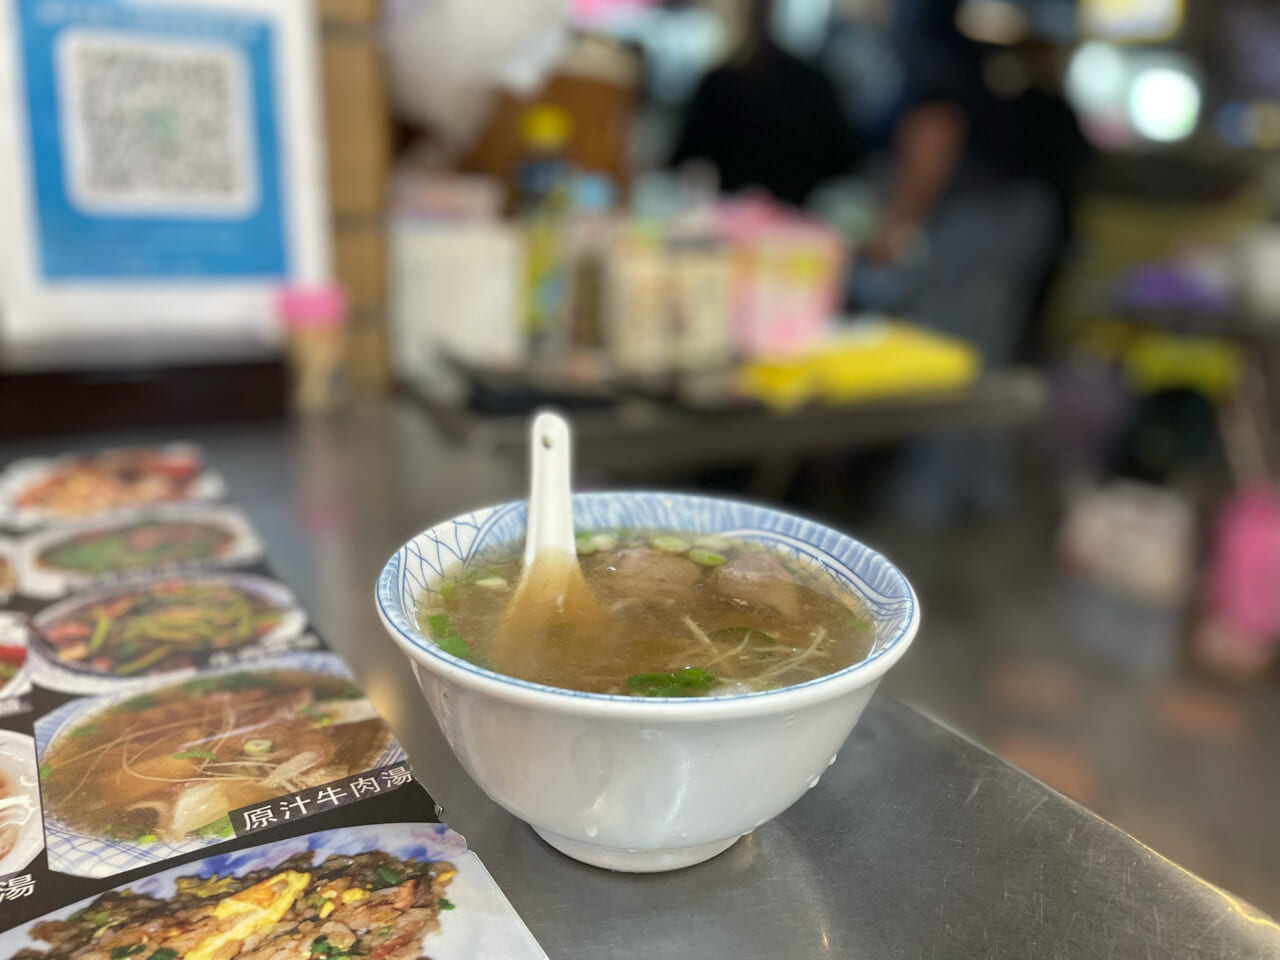 台南は、熱々スープをお椀によそってから生肉を落として出すもの。台北は、頼んでから肉を火にかけた鍋の中で一瞬しゃぶしゃぶ。台南とはまた違った味わい。